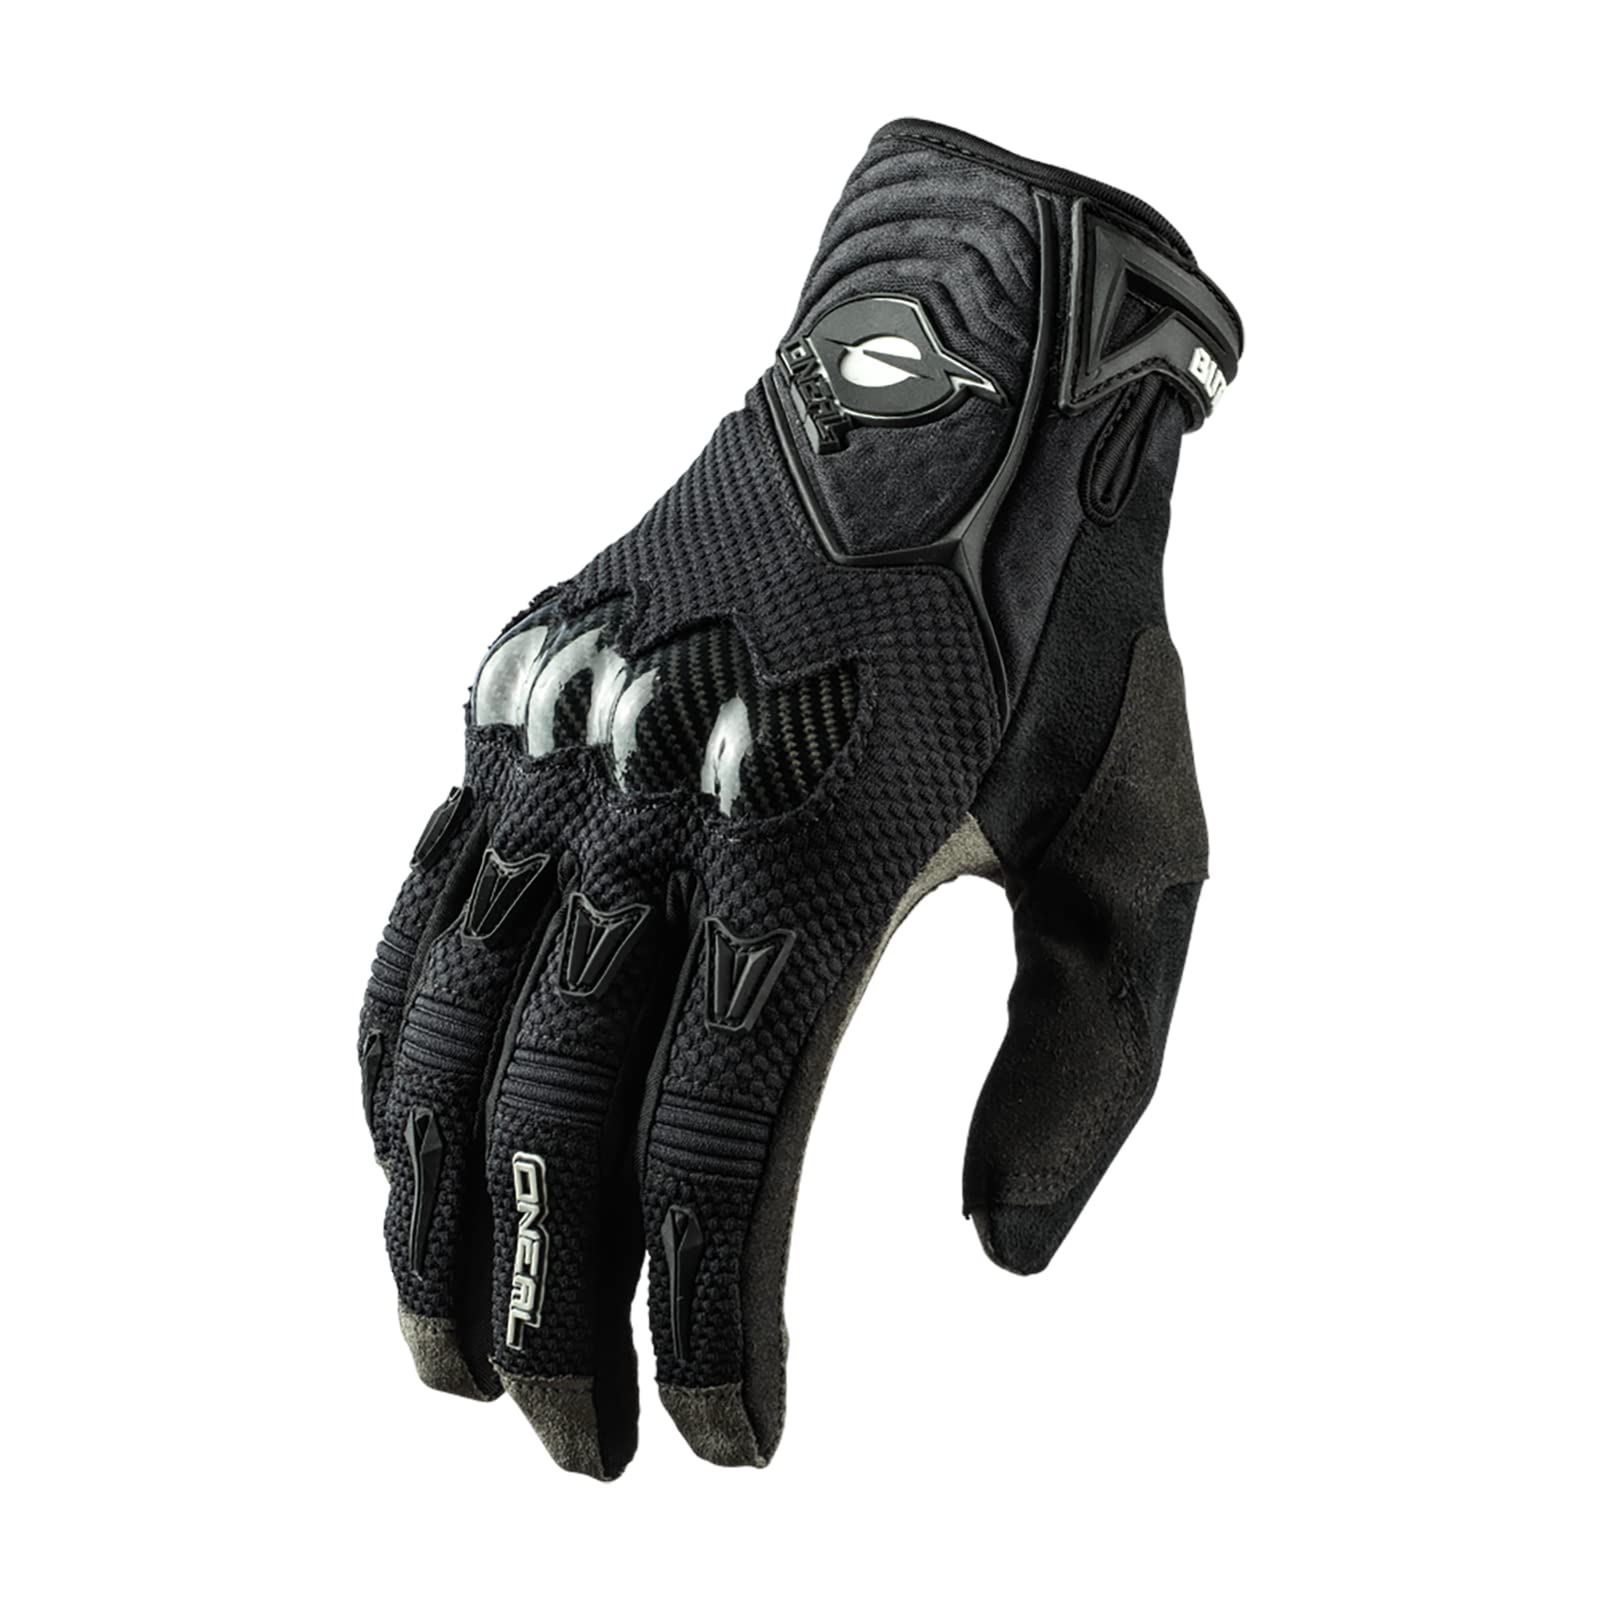 O'NEAL | Fahrrad- & Motocross-Handschuhe | MX MTB DH FR Downhill Freeride | 4-Wege-Stretch, Karbon-Knöchelschutz, Silikonbeschichtet | Butch Carbon Glove | Erwachsene | Schwarz | Größe L von O'NEAL